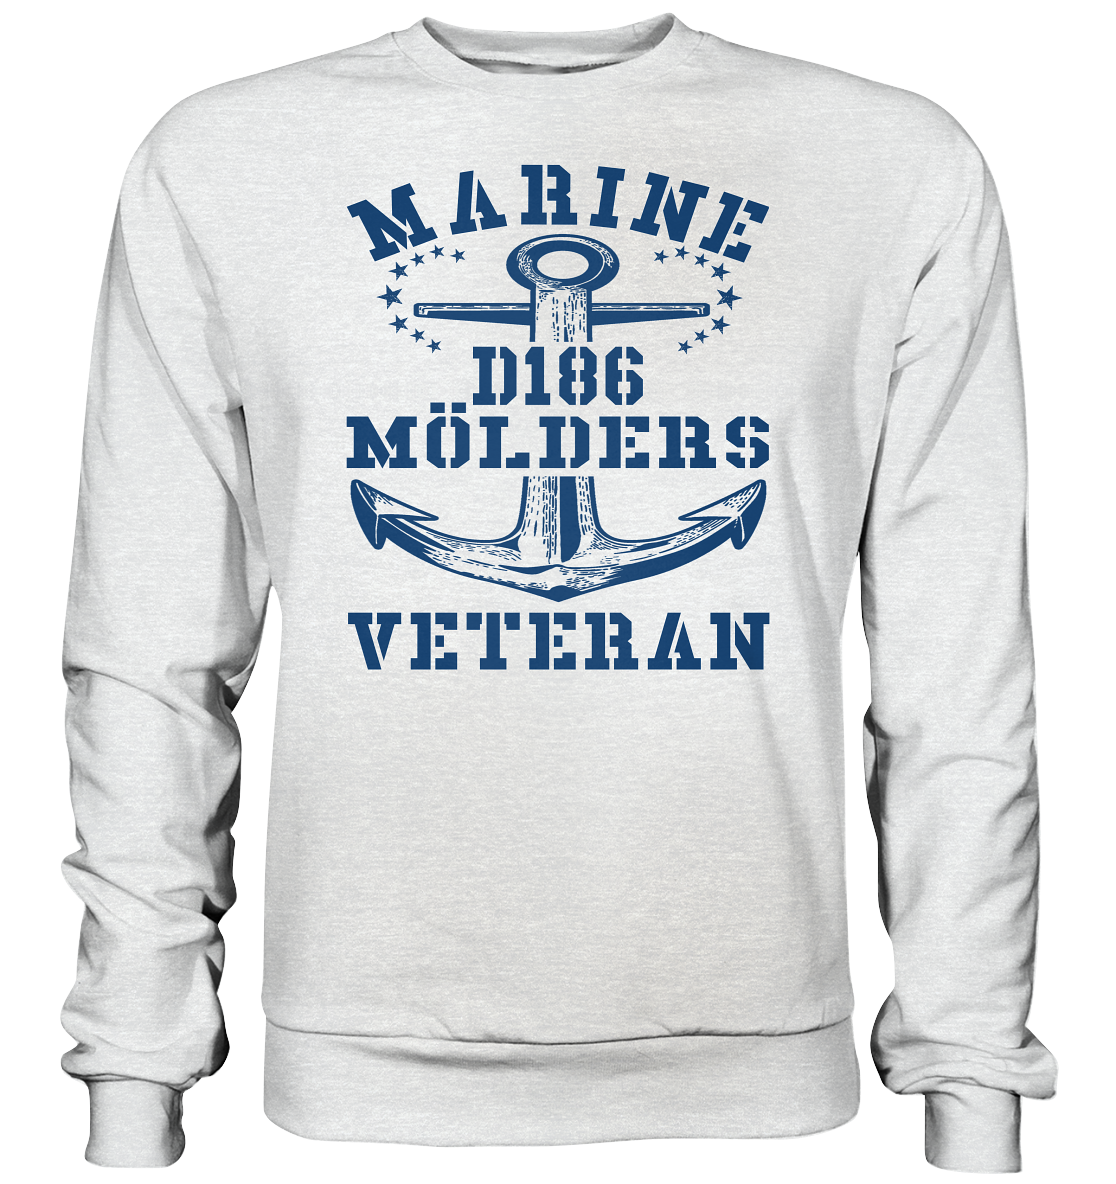 Zerstörer D186 MÖLDERS Marine Veteran - Premium Sweatshirt